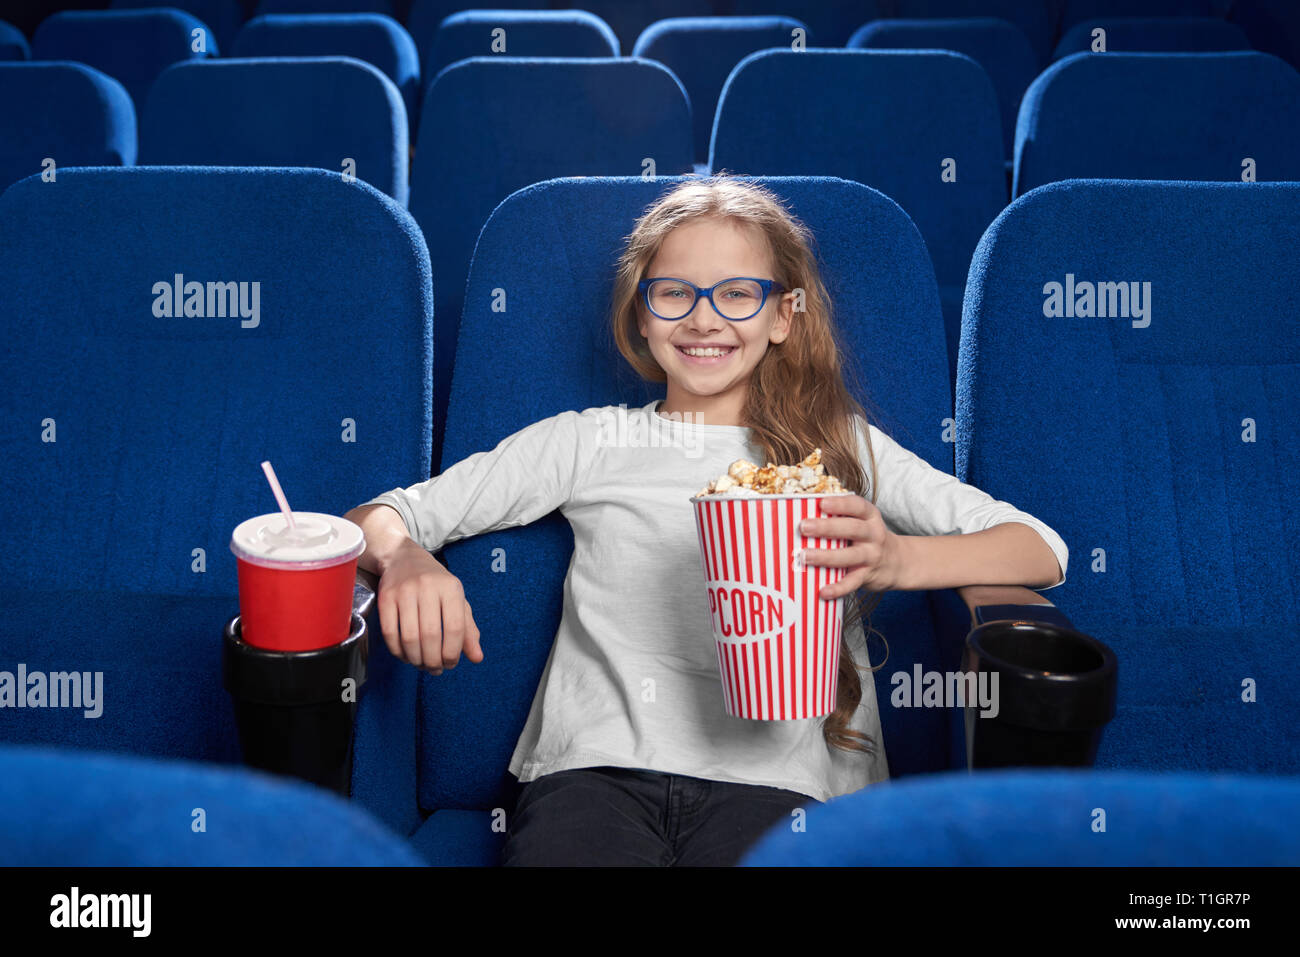 Vorderansicht des Glücklichen, freudigen Mädchen im Kino sitzen, holding Popcornwanne, rot Pappbecher mit Kohlensäure trinken. Schöne Kind lächelnd, posierend, an der Kamera schaut. Stockfoto